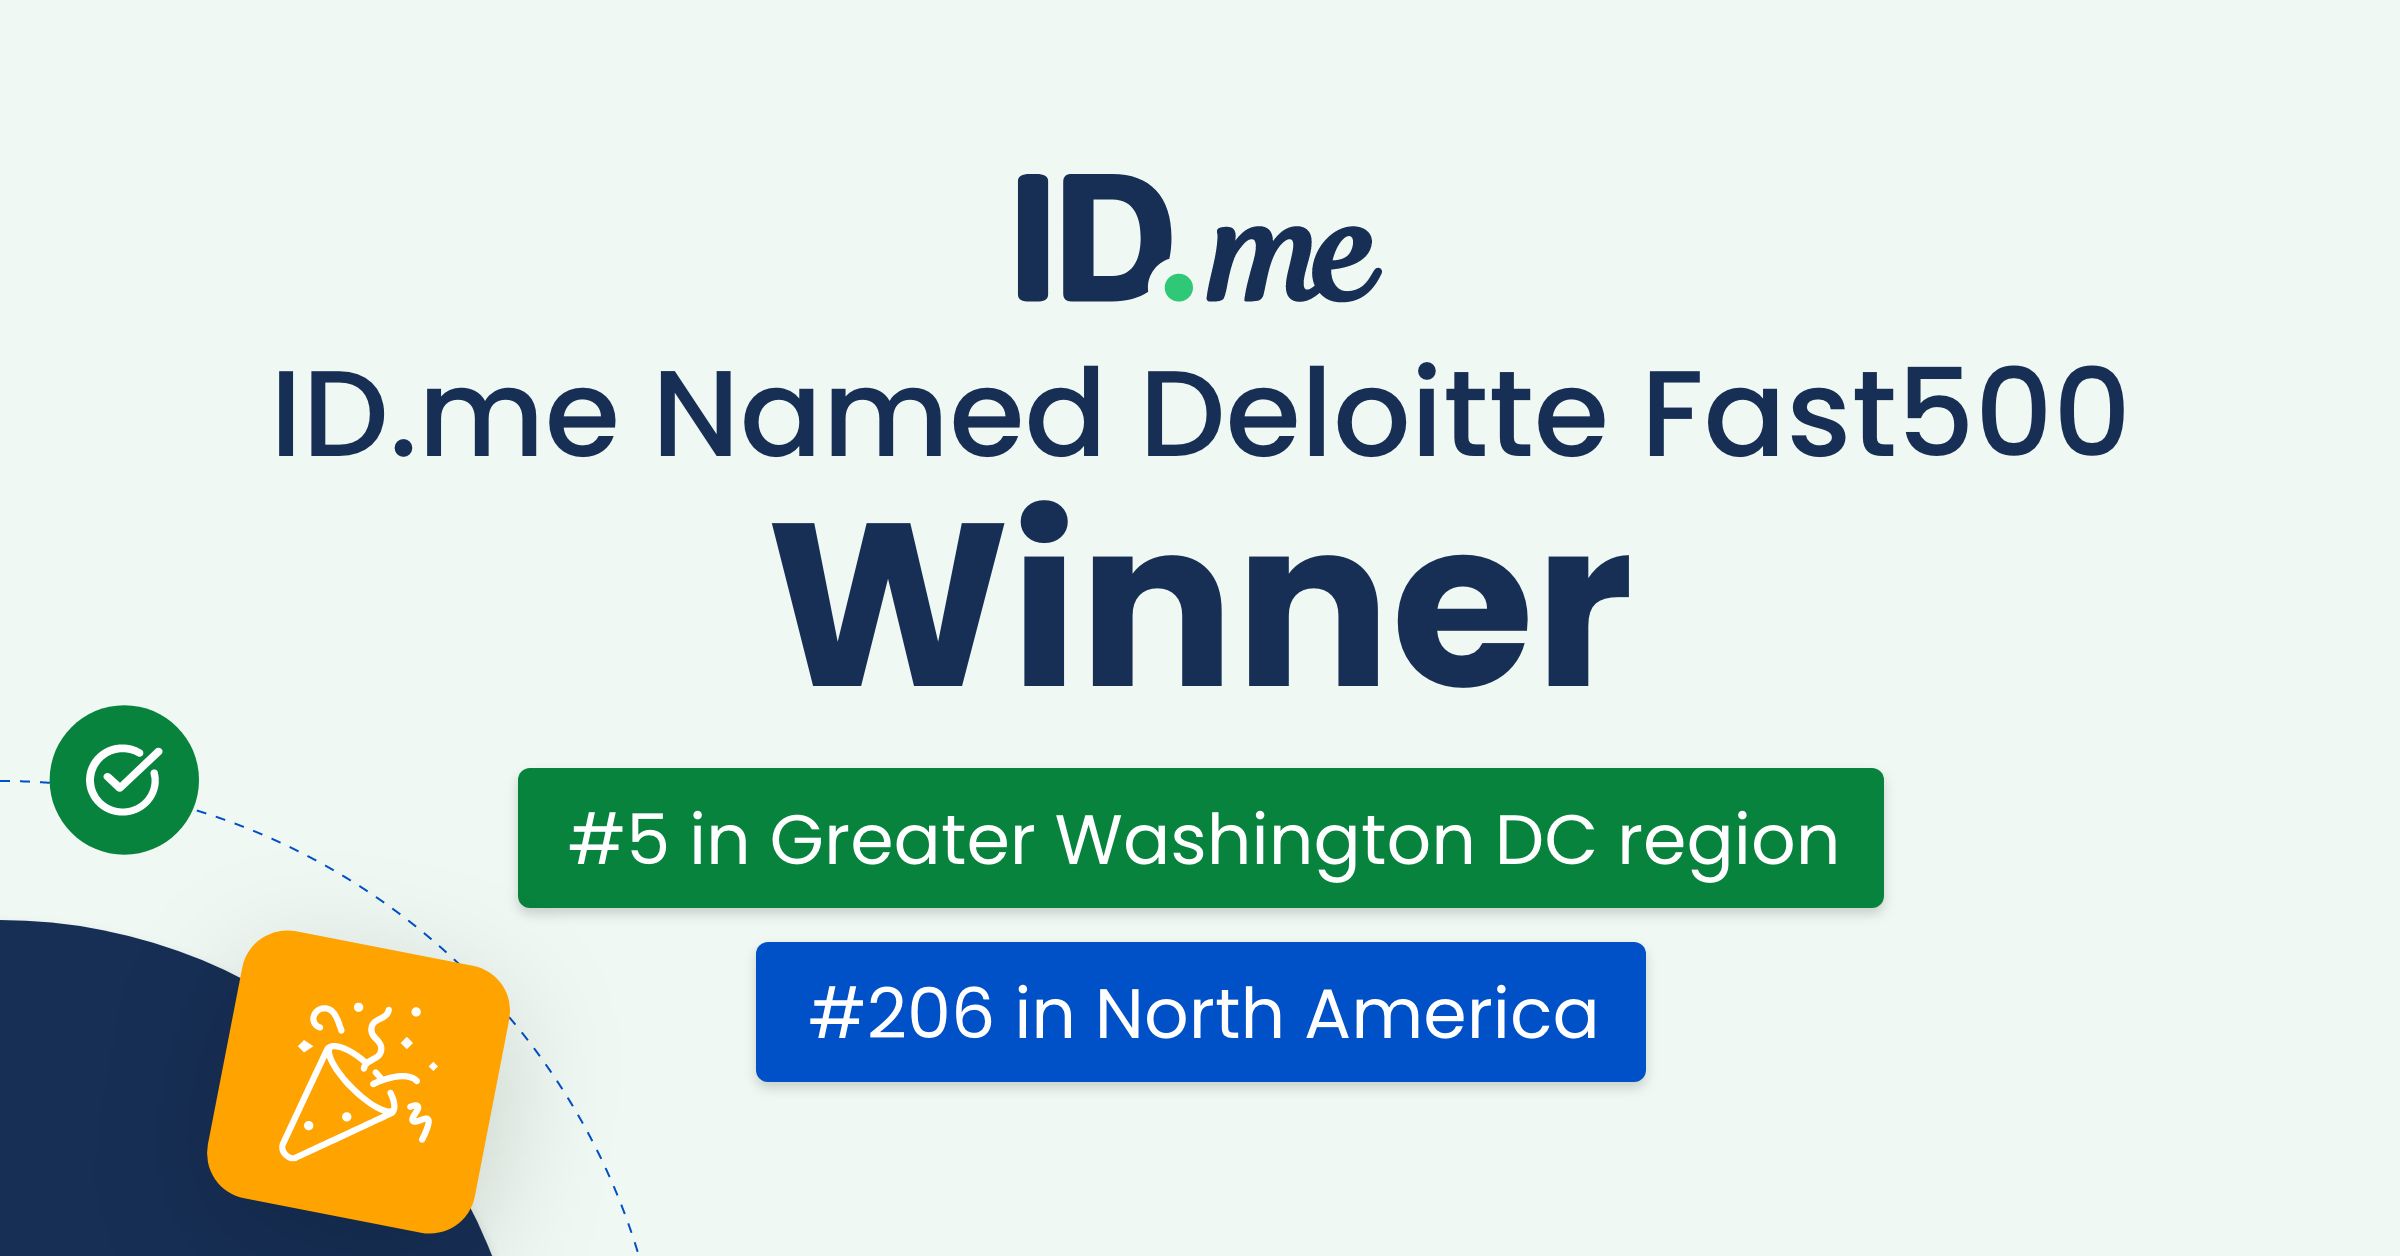 ID.me Named Deloitte Fast500 Winner. #5 in Greater Washington DC region. #206 in North America